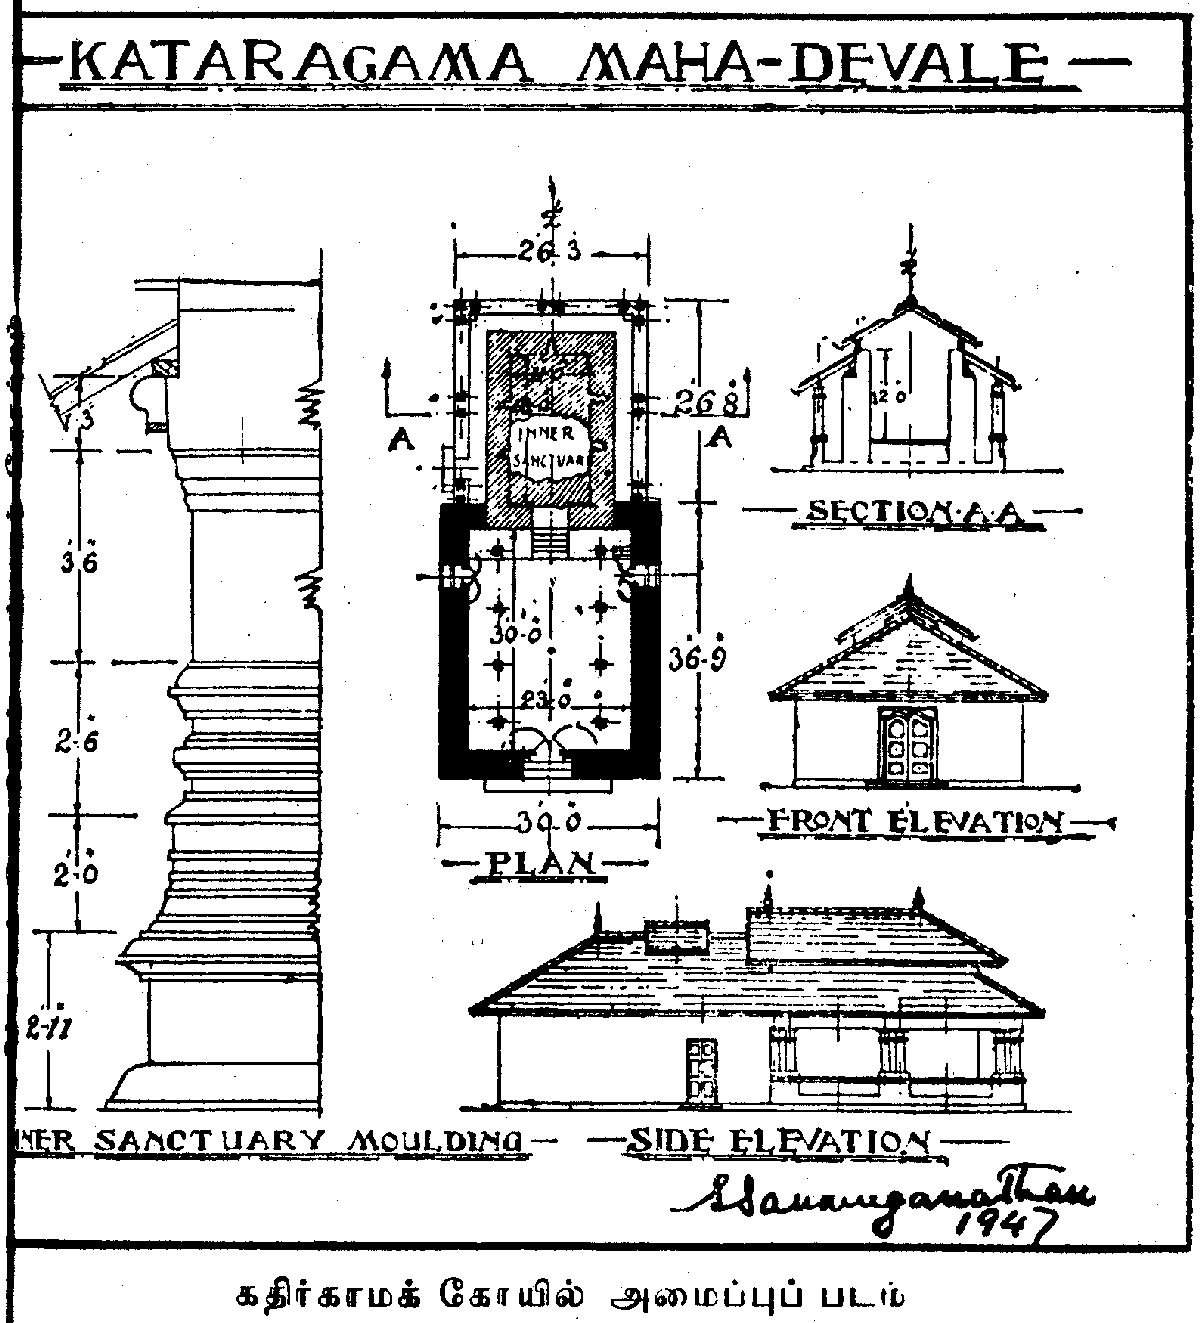 Kataragama Maha Devale floor plan